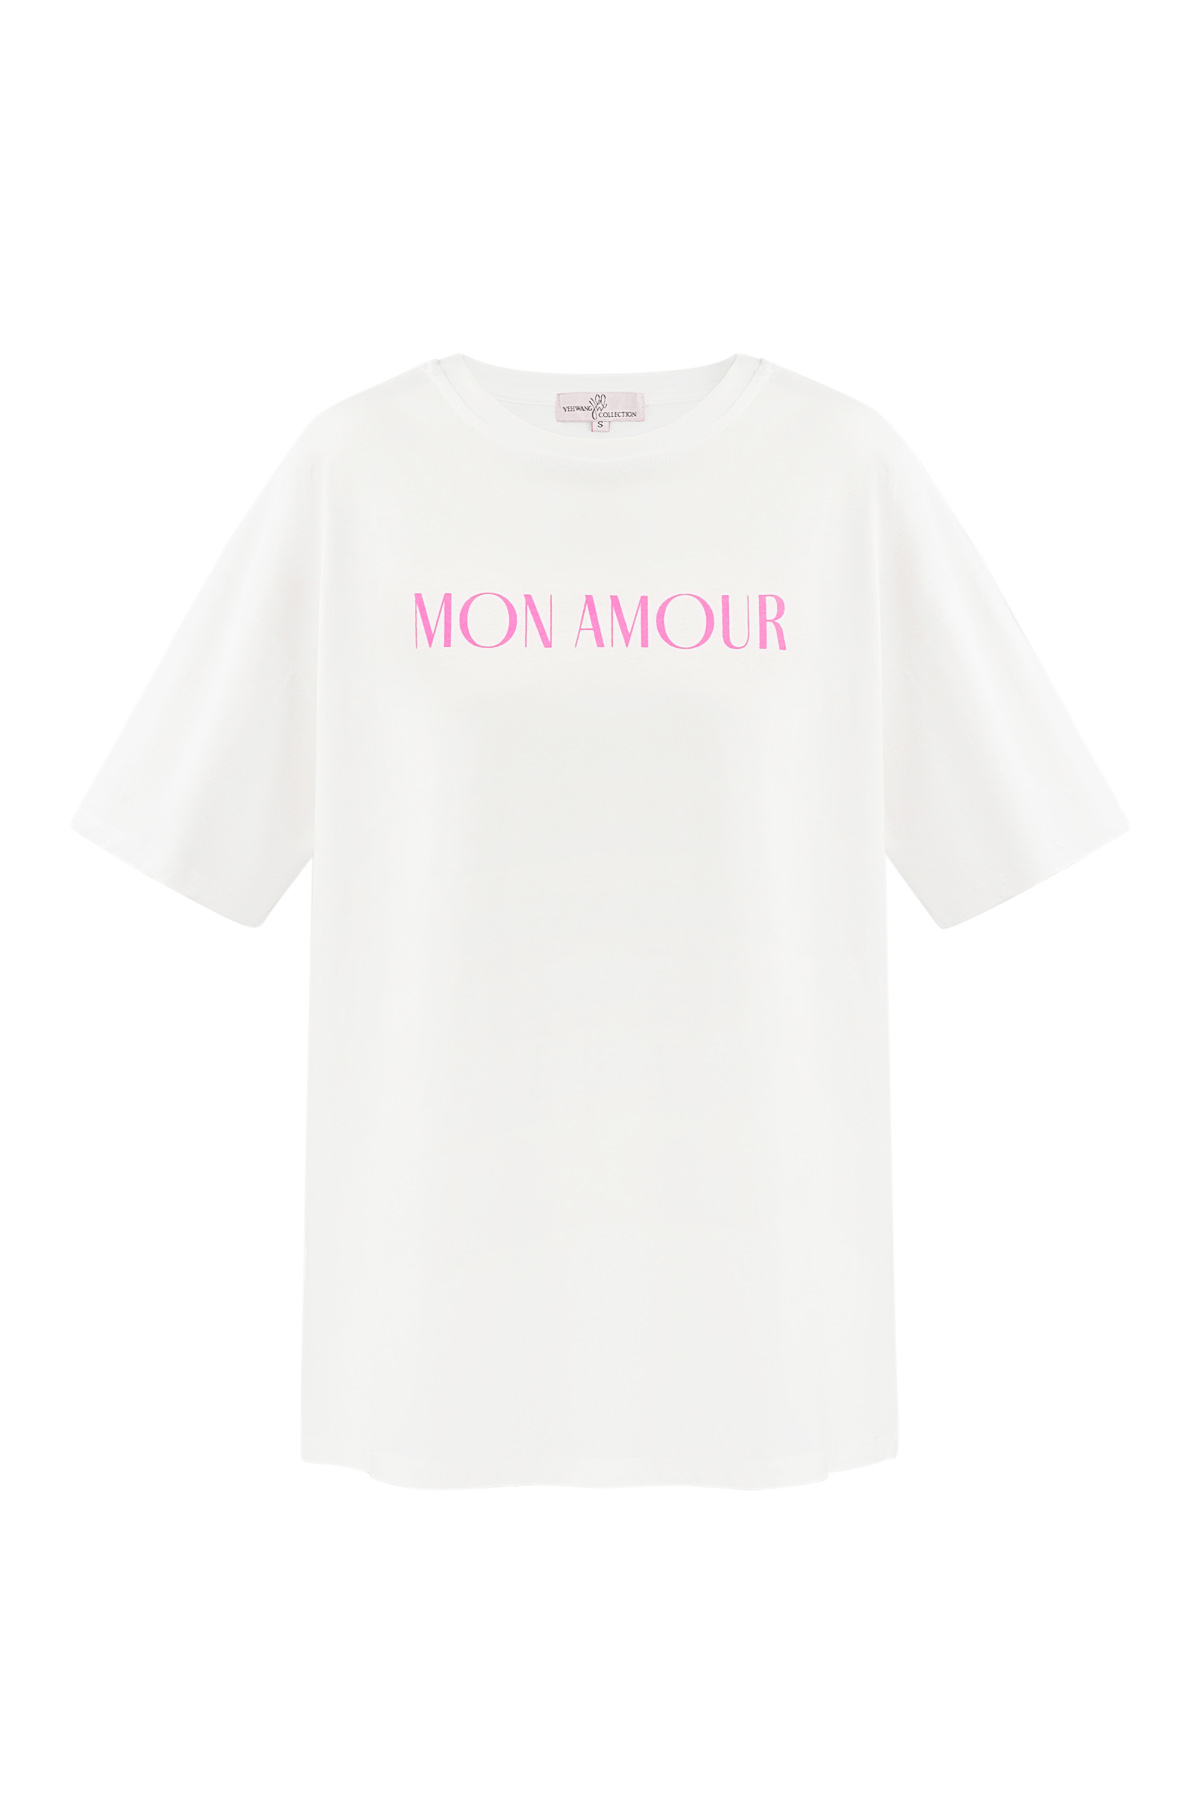 Maglietta mon amour - bianca